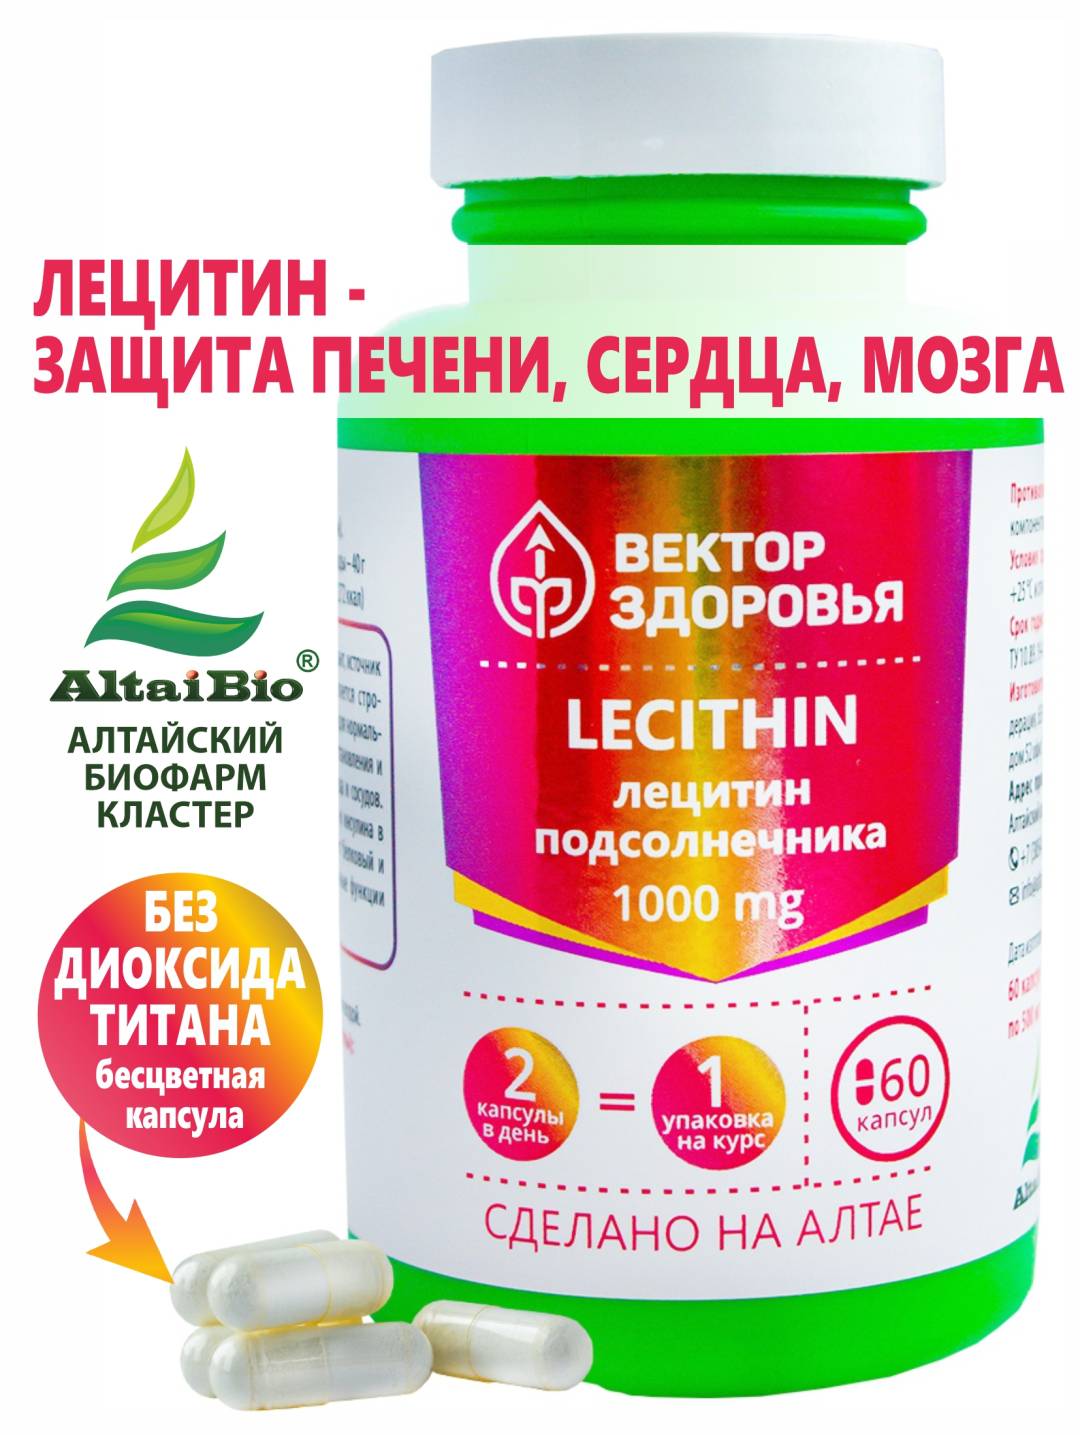 Комплекс LECITHIN - лецитин подсолнечника, 60 капсул